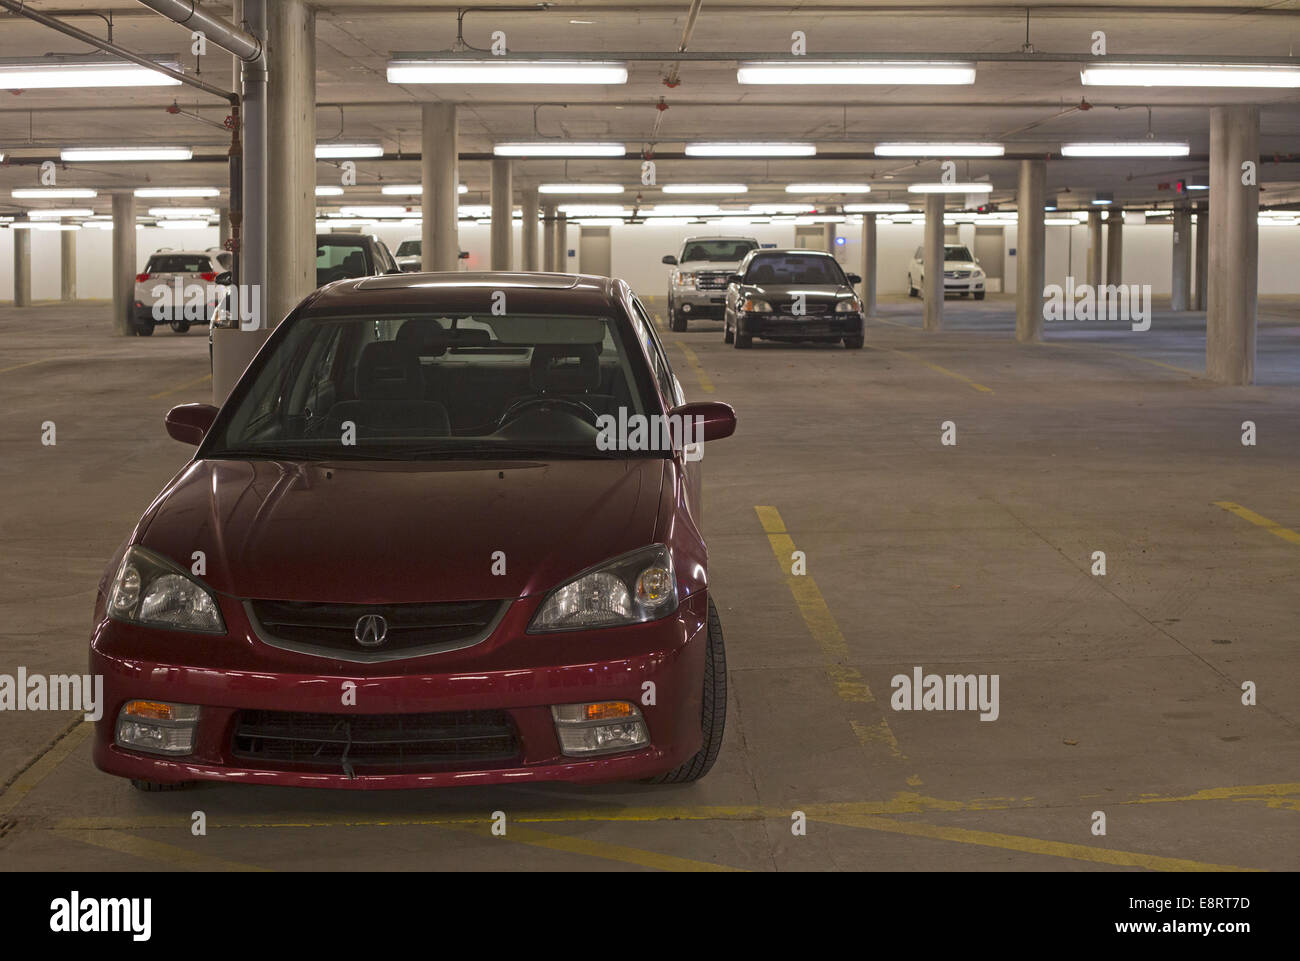 Well-lit underground parking garage Stock Photo